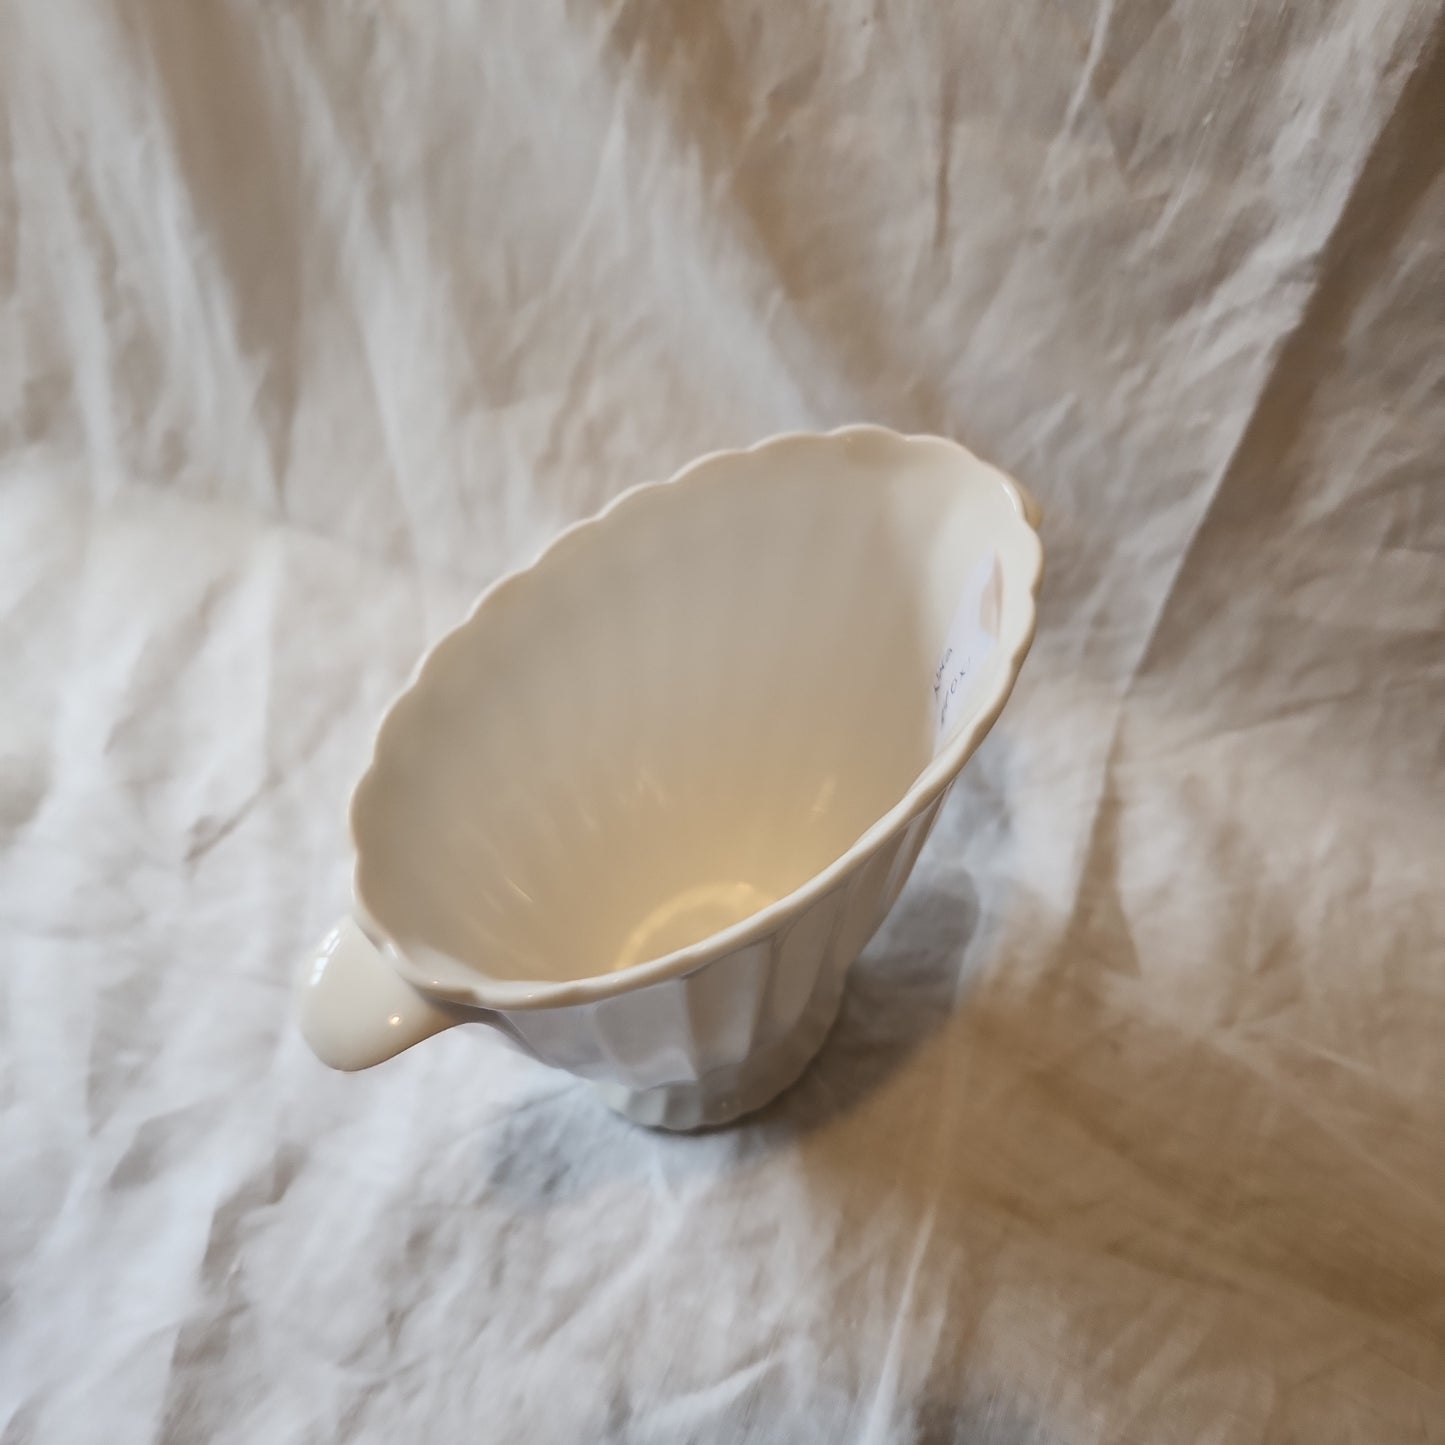 High quality white porcelain vase